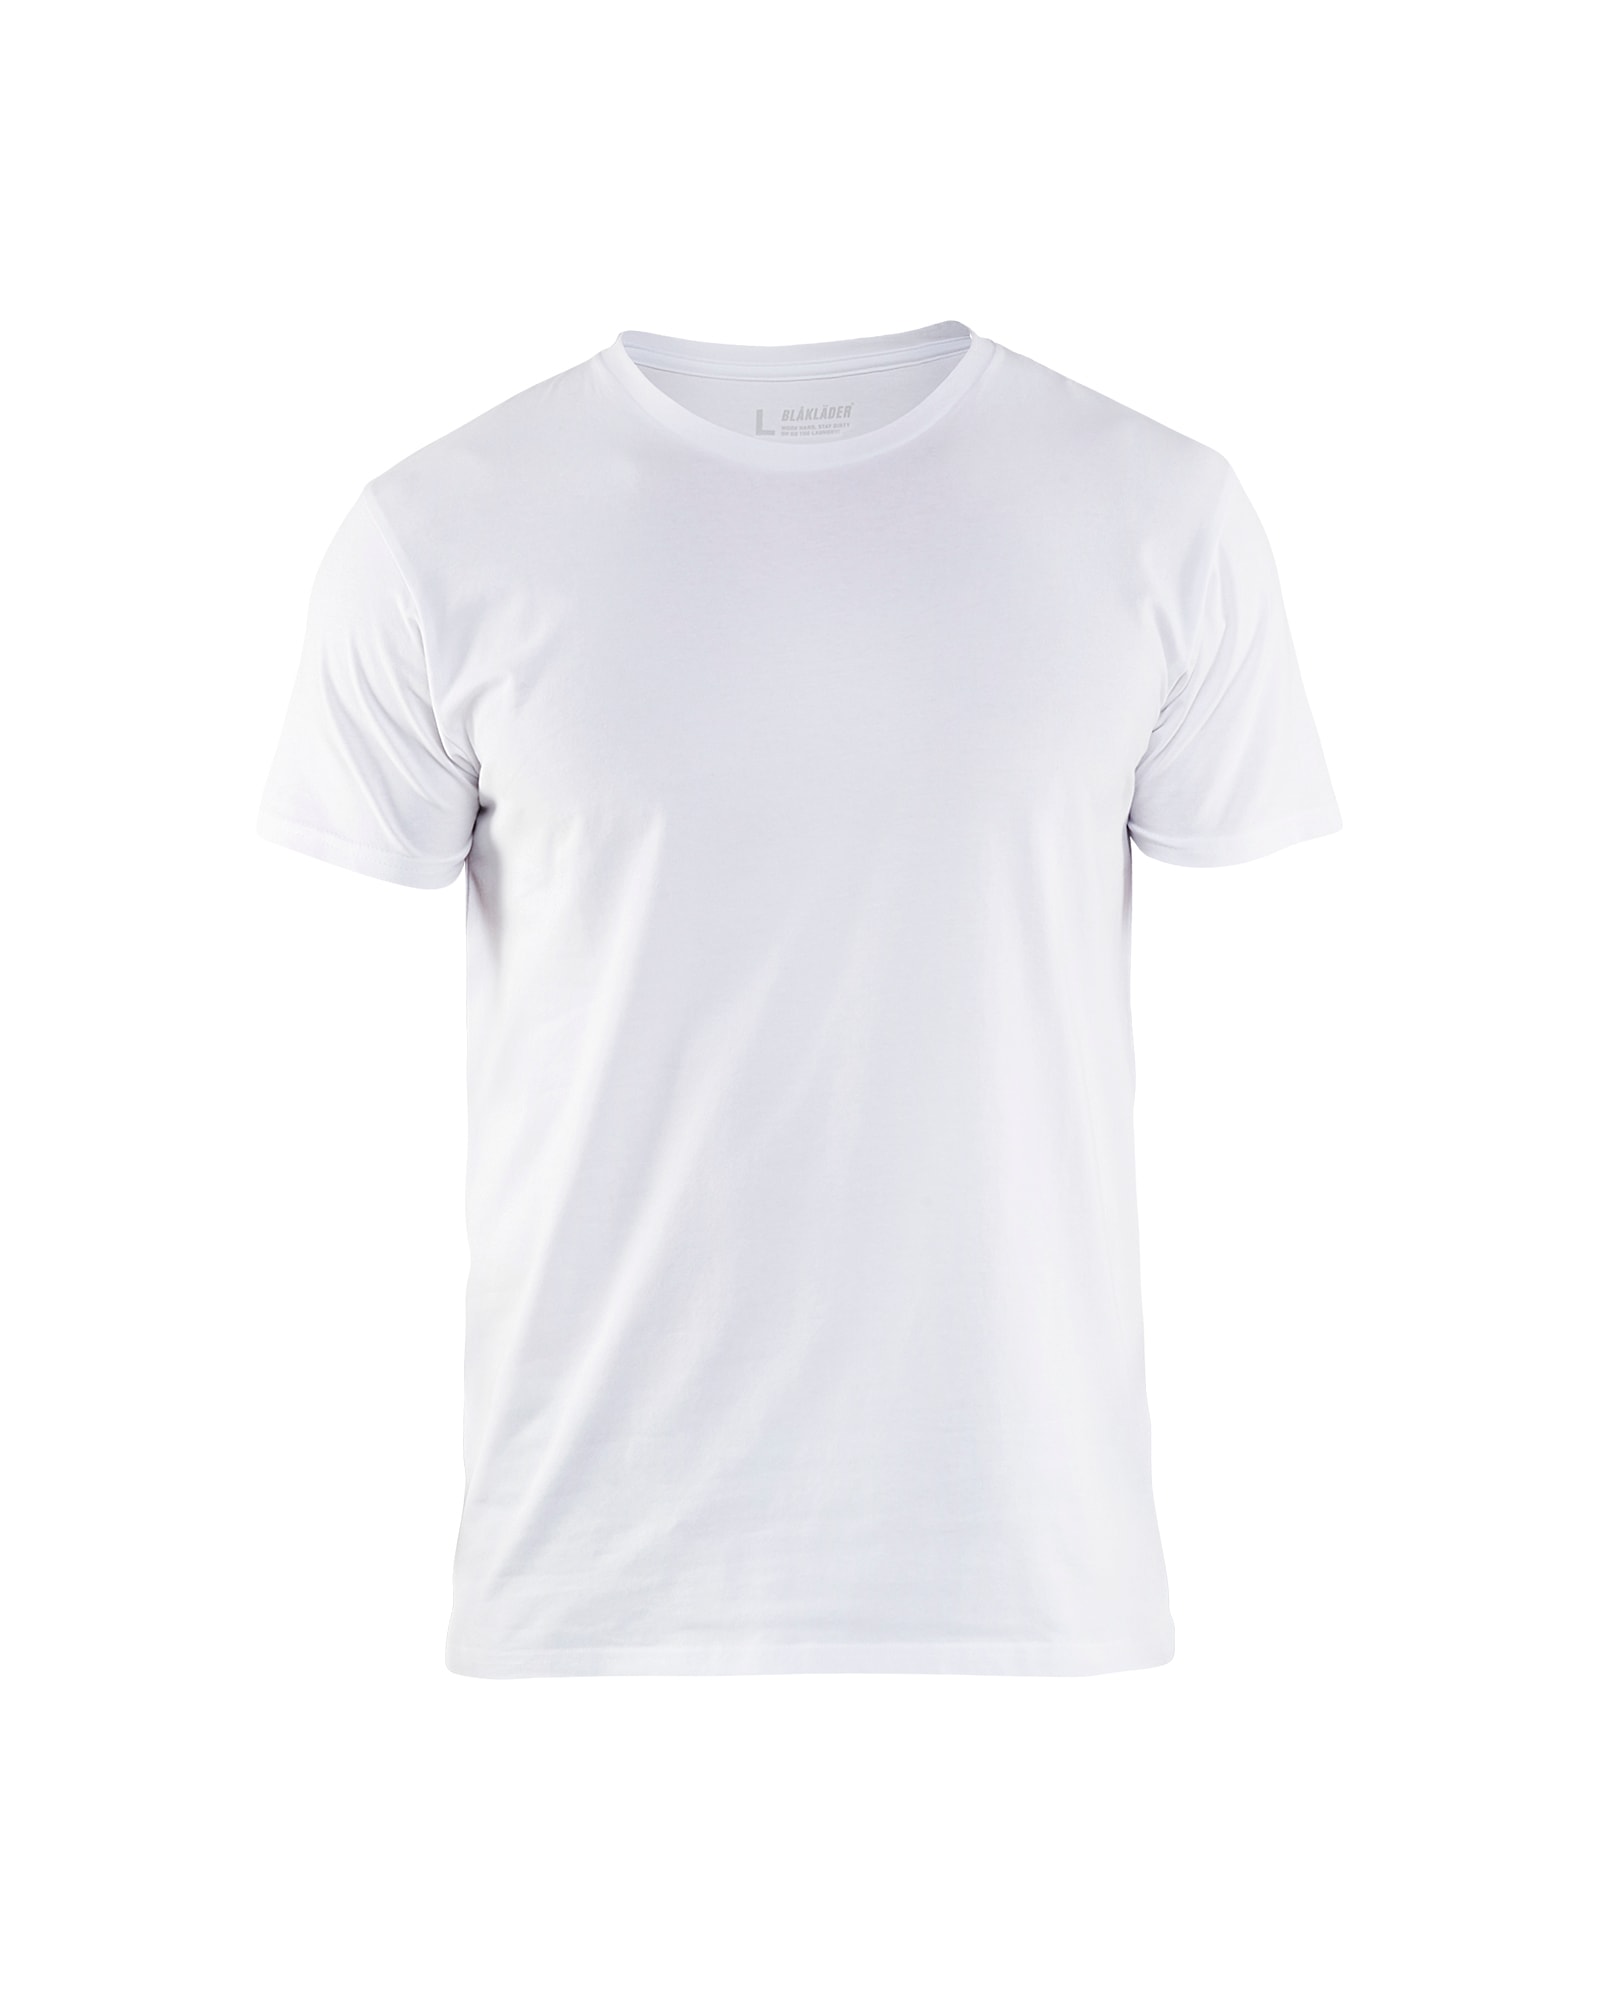 3533 1029 Blakläder T-Shirt Slim Fit